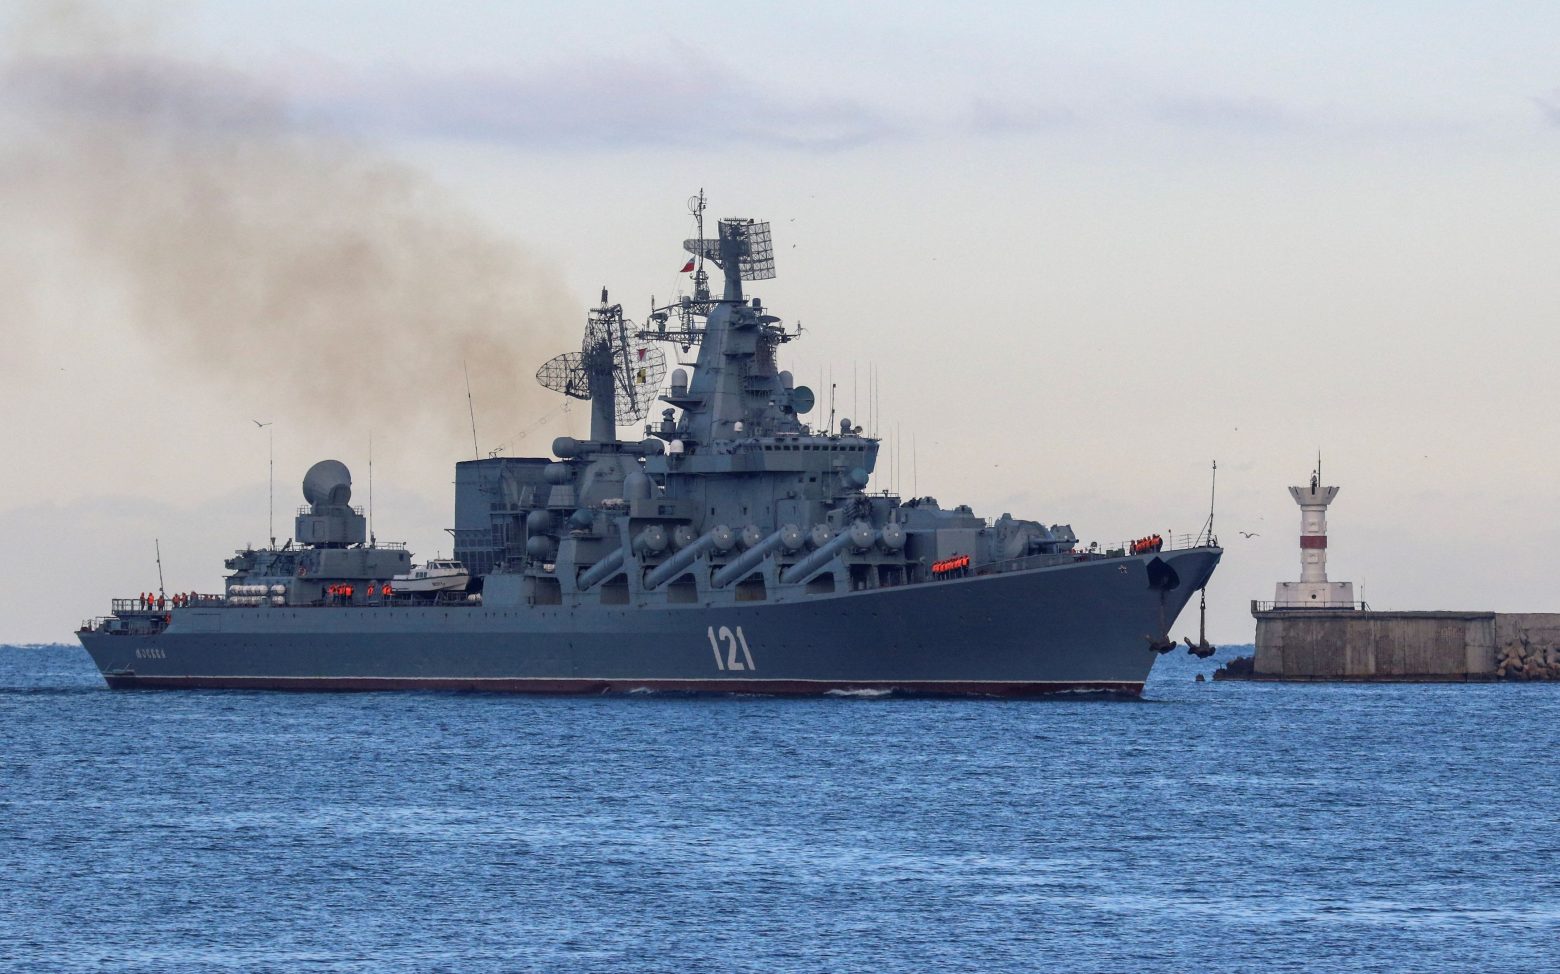 Βύθιση Moskva: Το πλοίο χτυπήθηκε από ουκρανικούς πυραύλους, λένε οι ΗΠΑ